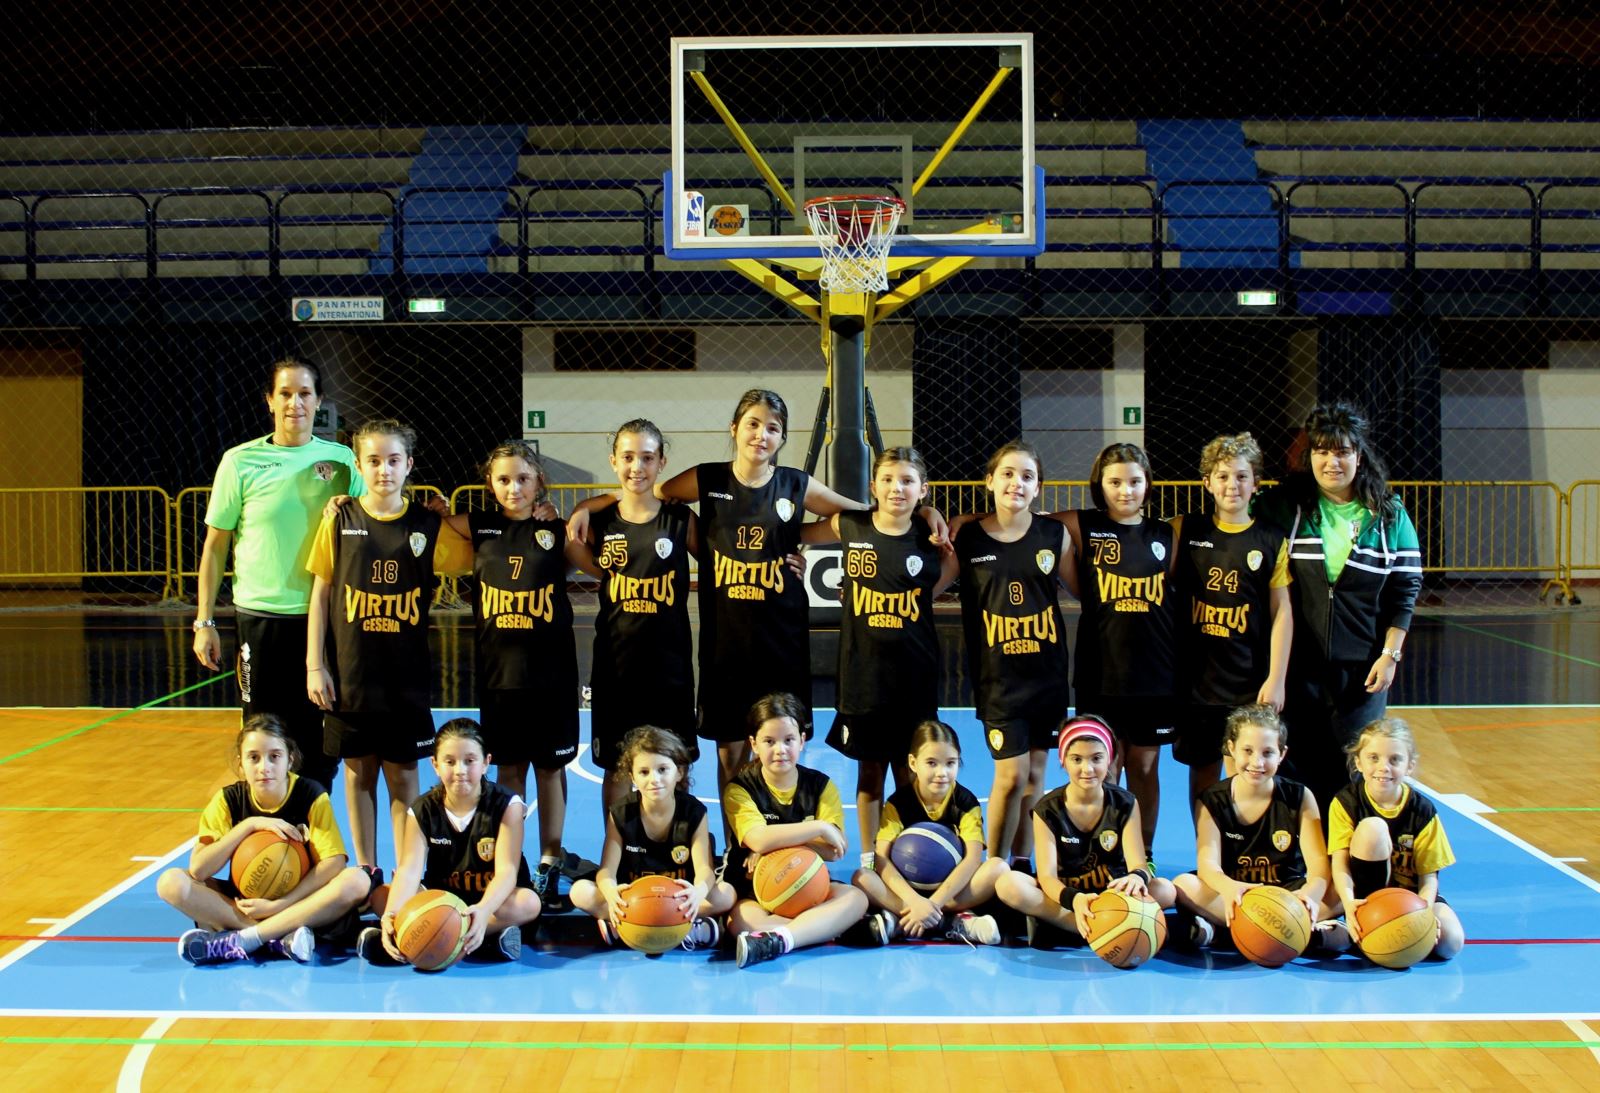 GAZZELLE VIRTUSSINE VINCONO IN TRASFERTA |Basket settore giovanile|